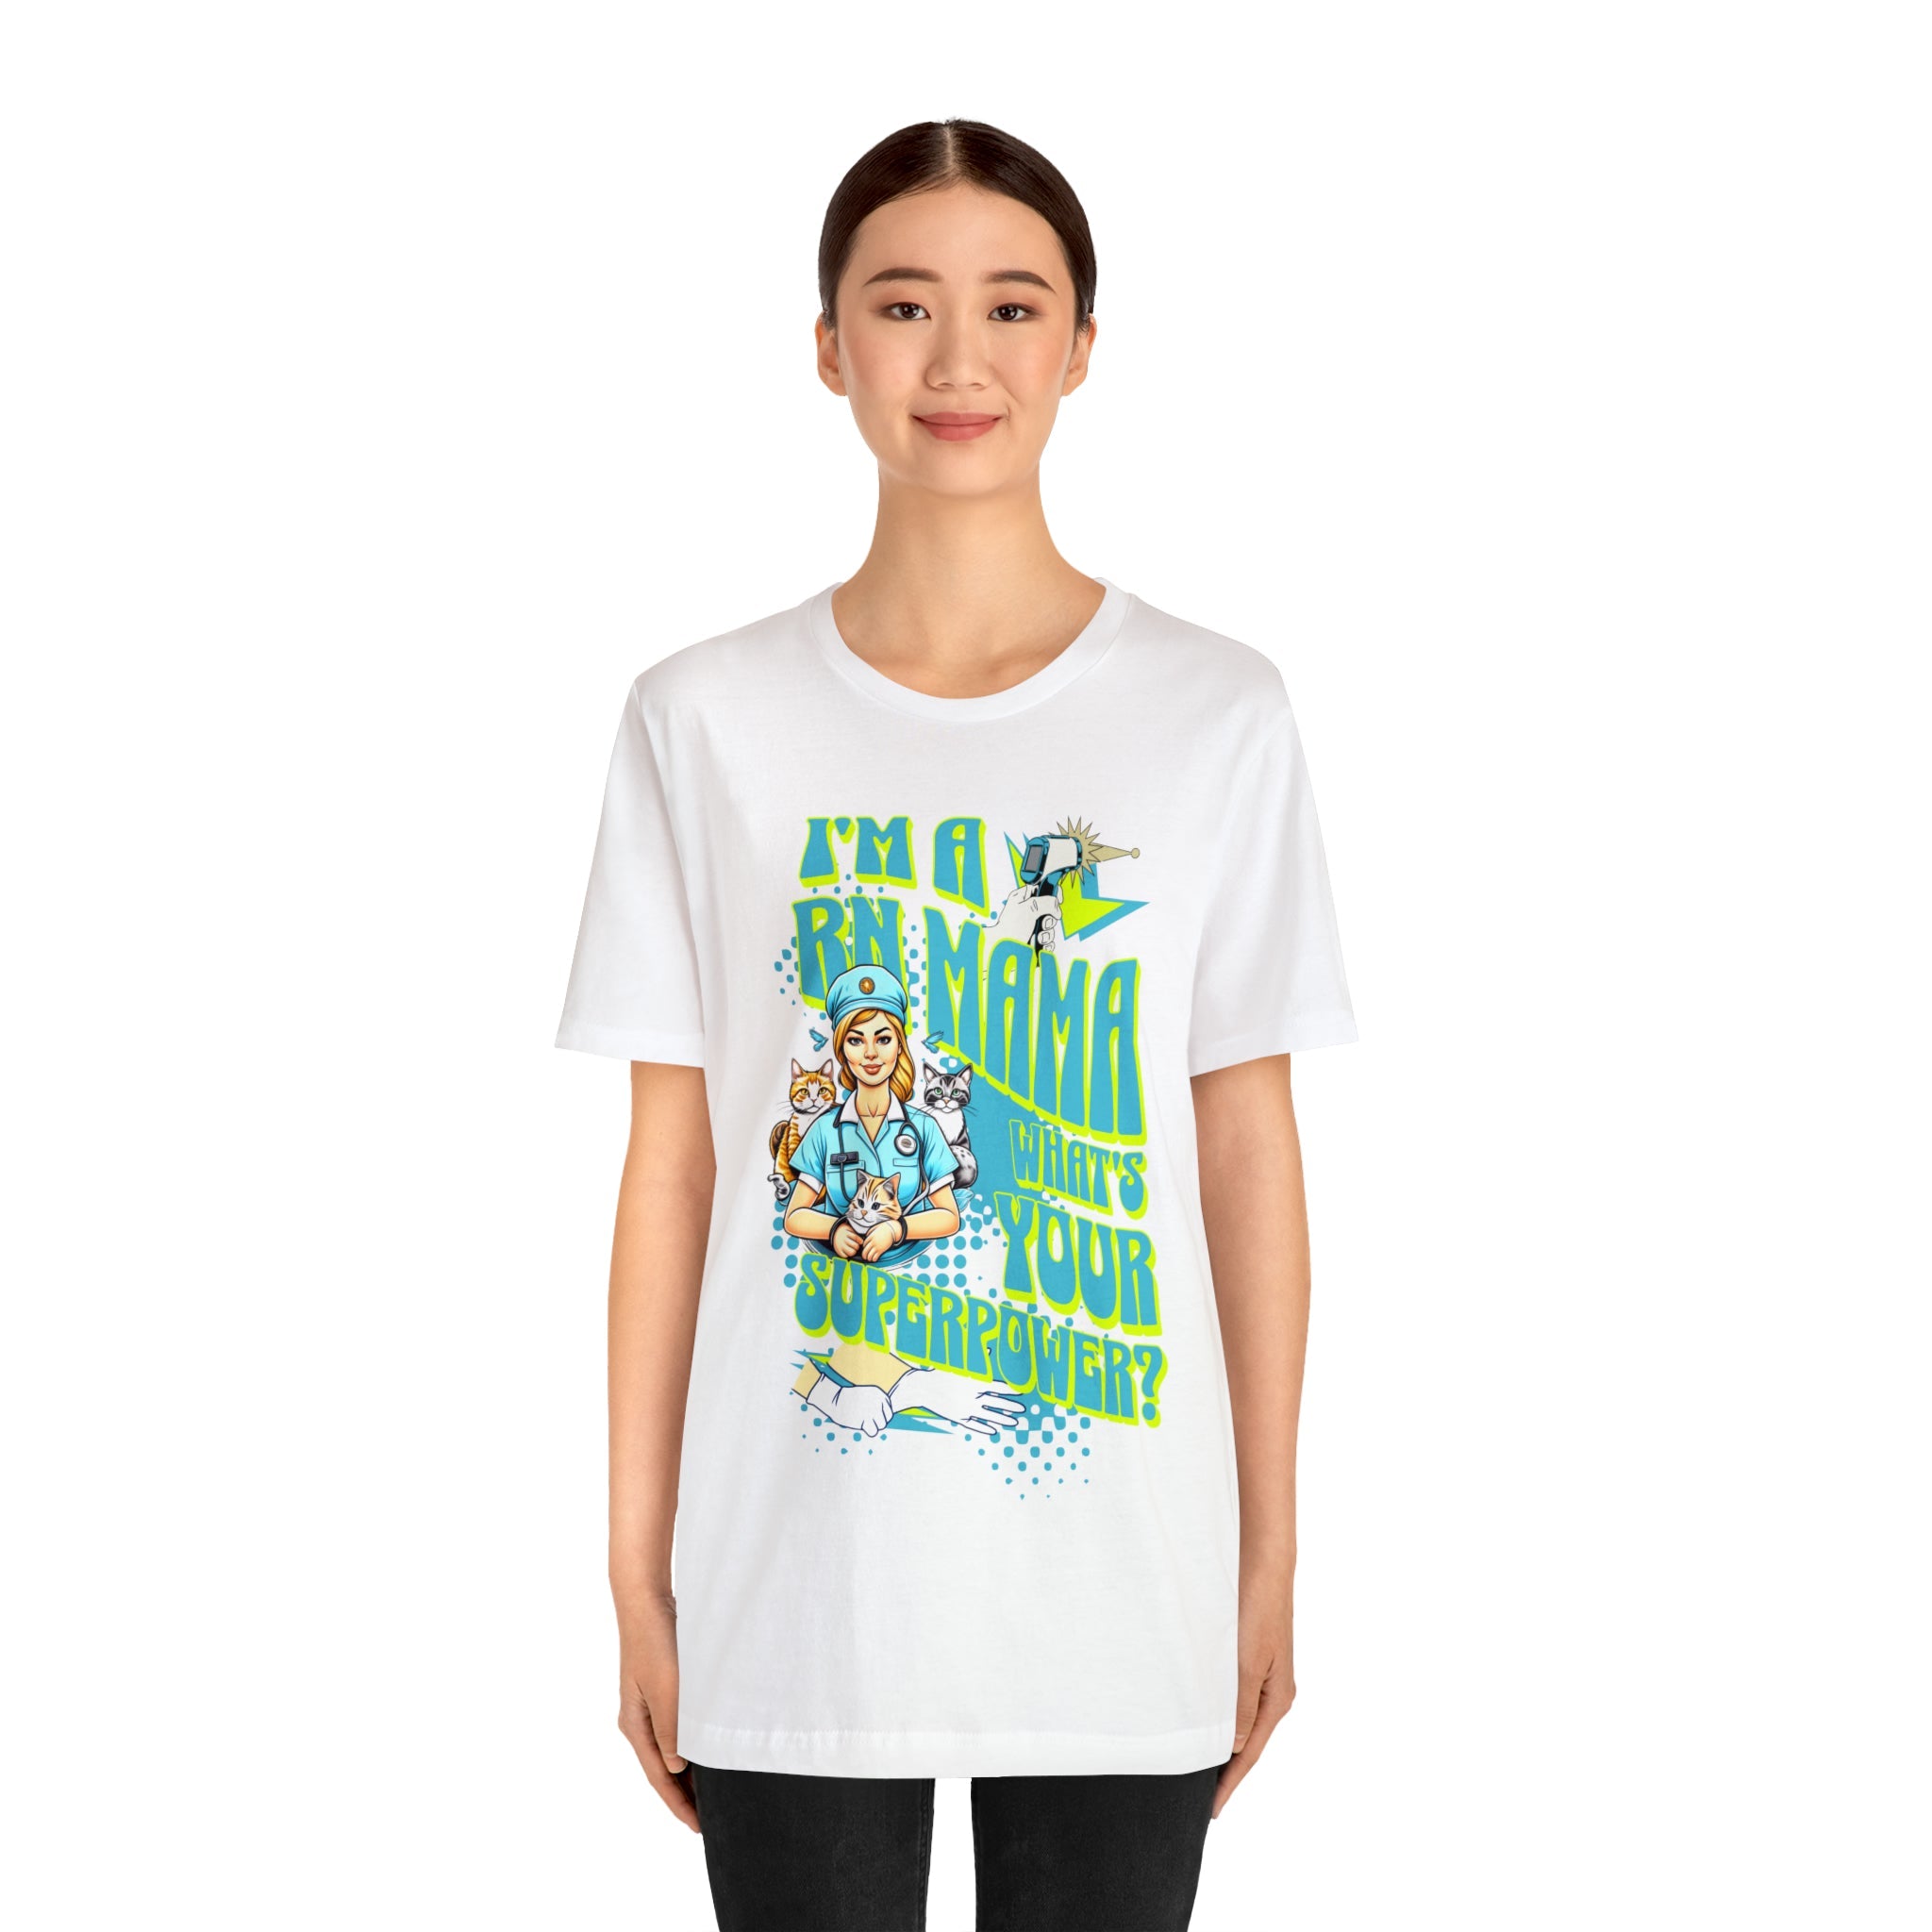 I Am a RN Mama and A Nurse Funny T-shirt - RN Nurse Gift - MTL Dynamic StylesT-Shirt